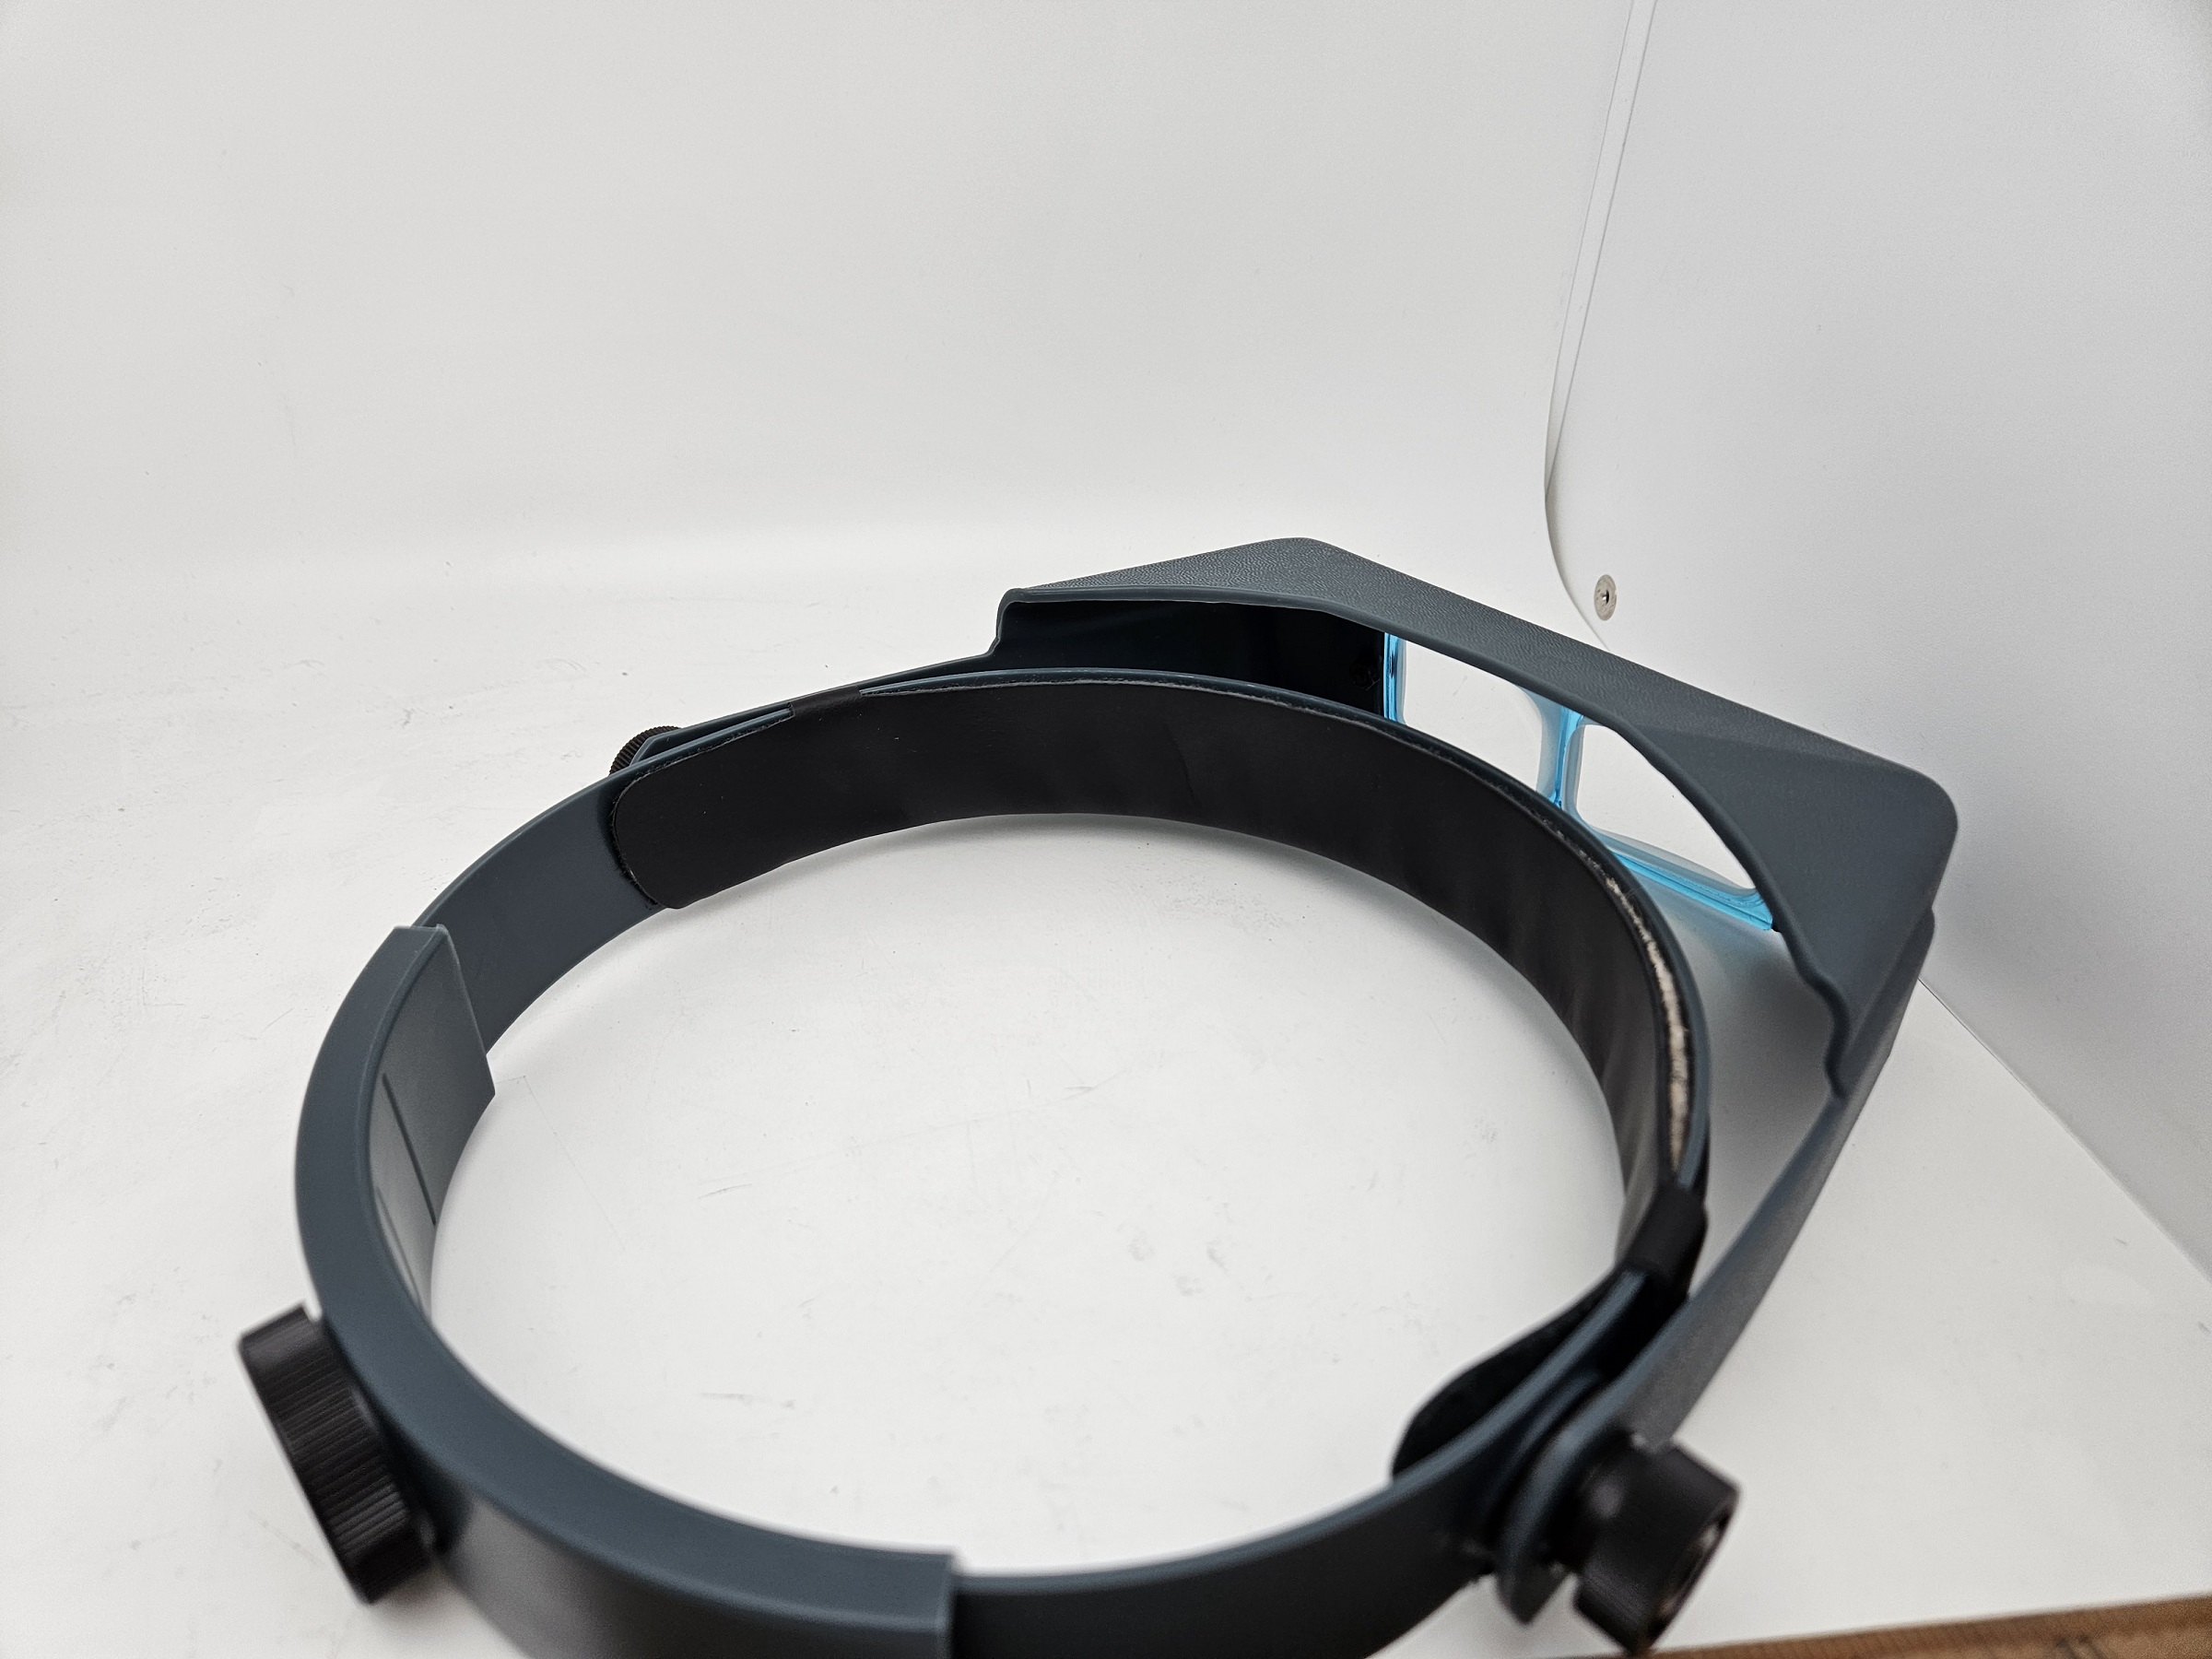 Donegan OptiVisor DA-10 Headband Magnifier Binocular 3.5X Optical